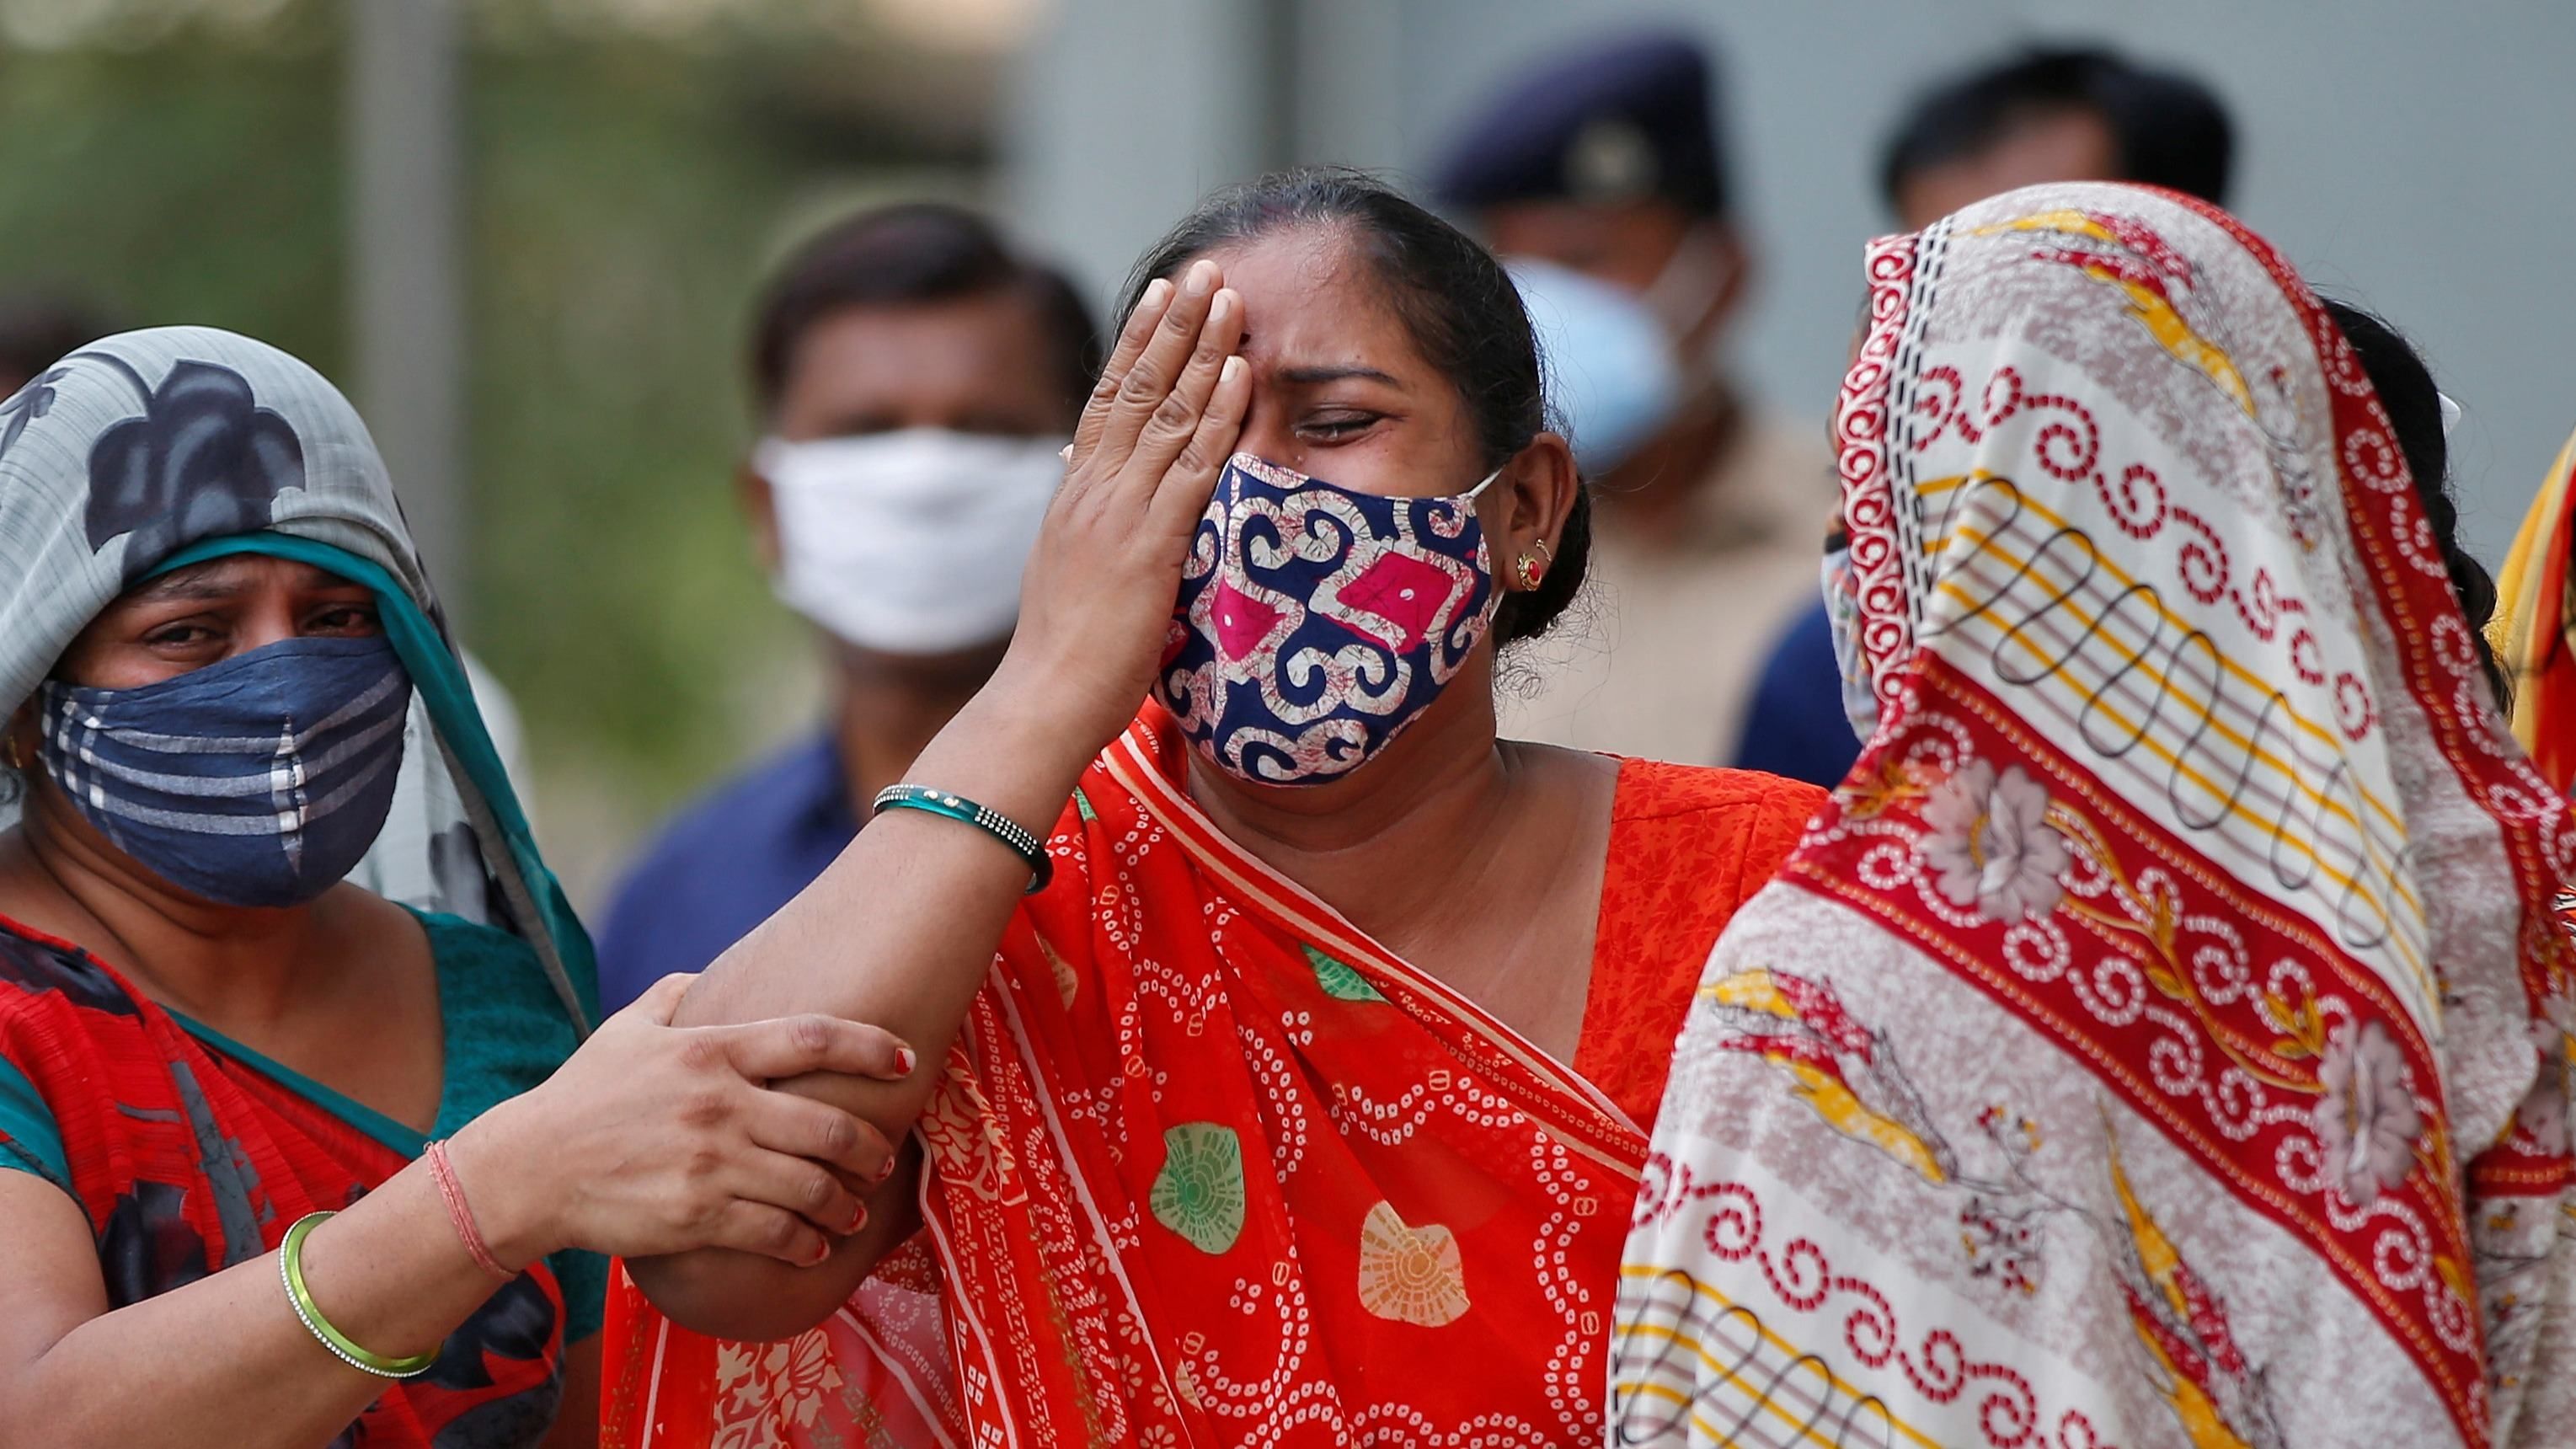 В Індії виплатять понад 600 доларів за кожну смерть від коронавірусу - Новини Здоров’я